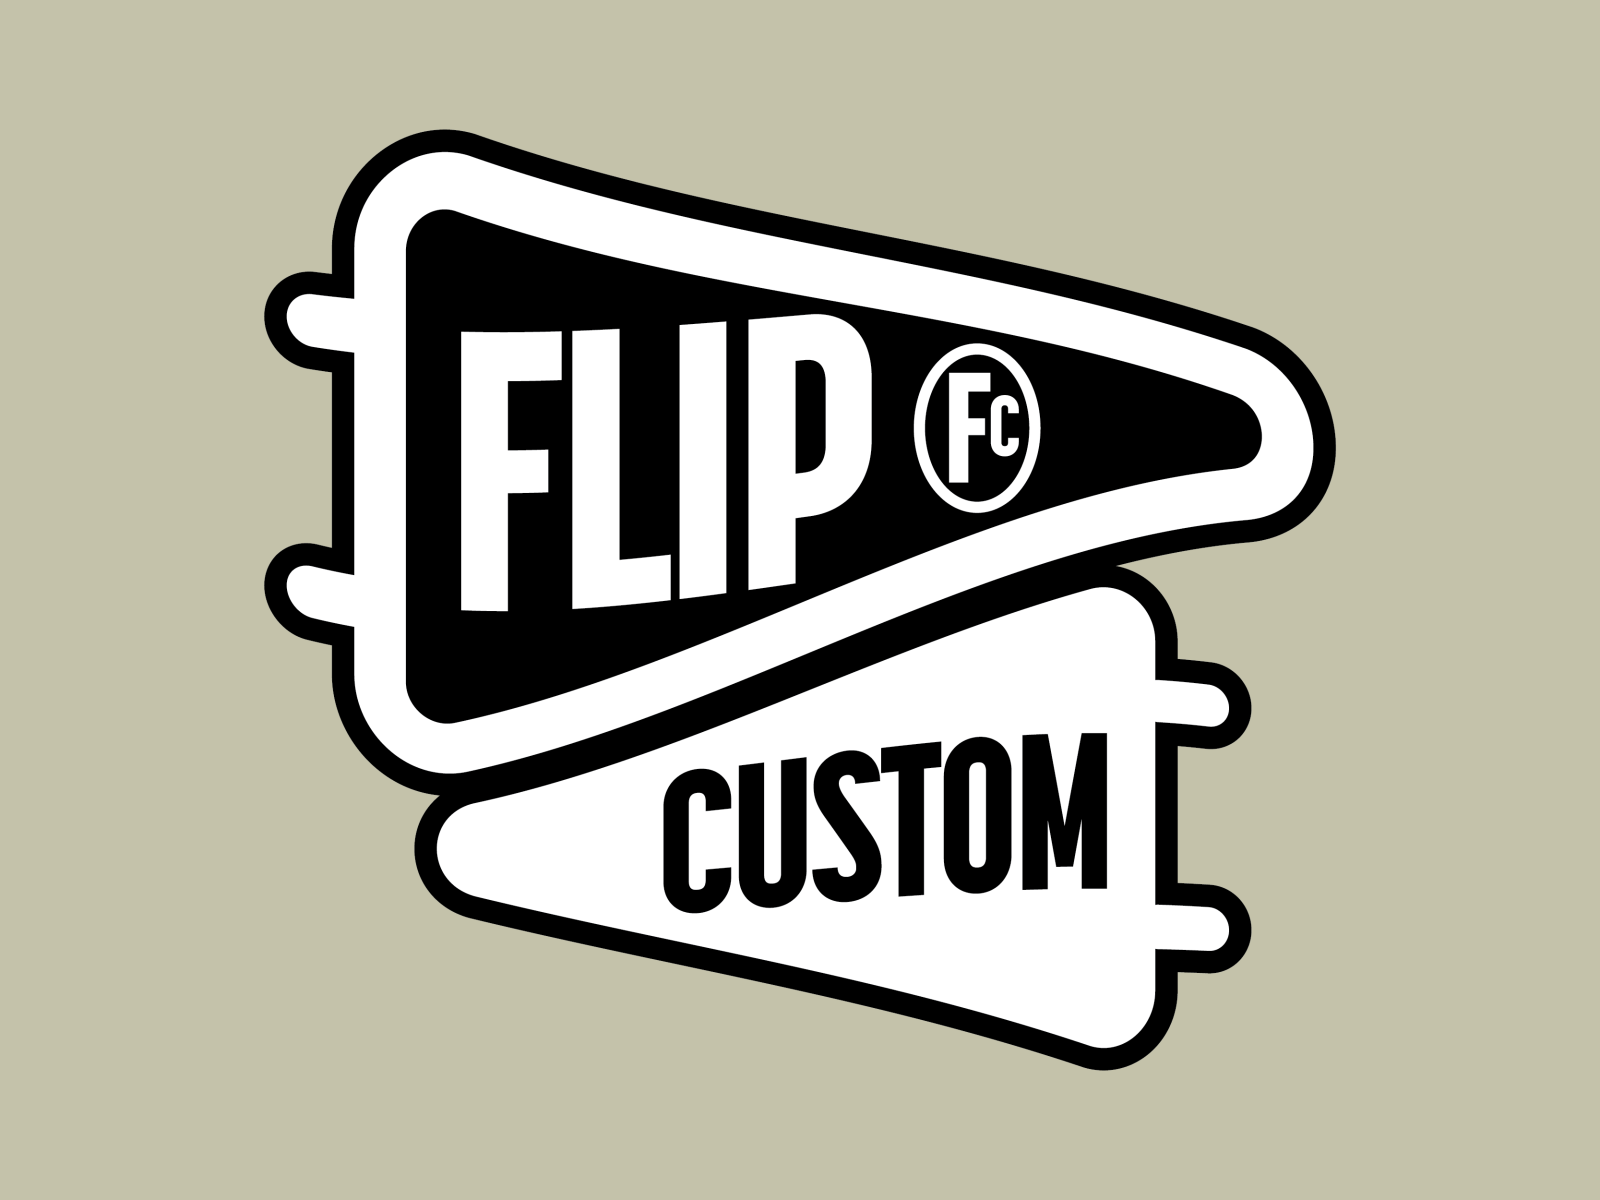 Flip Custom by Eric Boulé on Dribbble